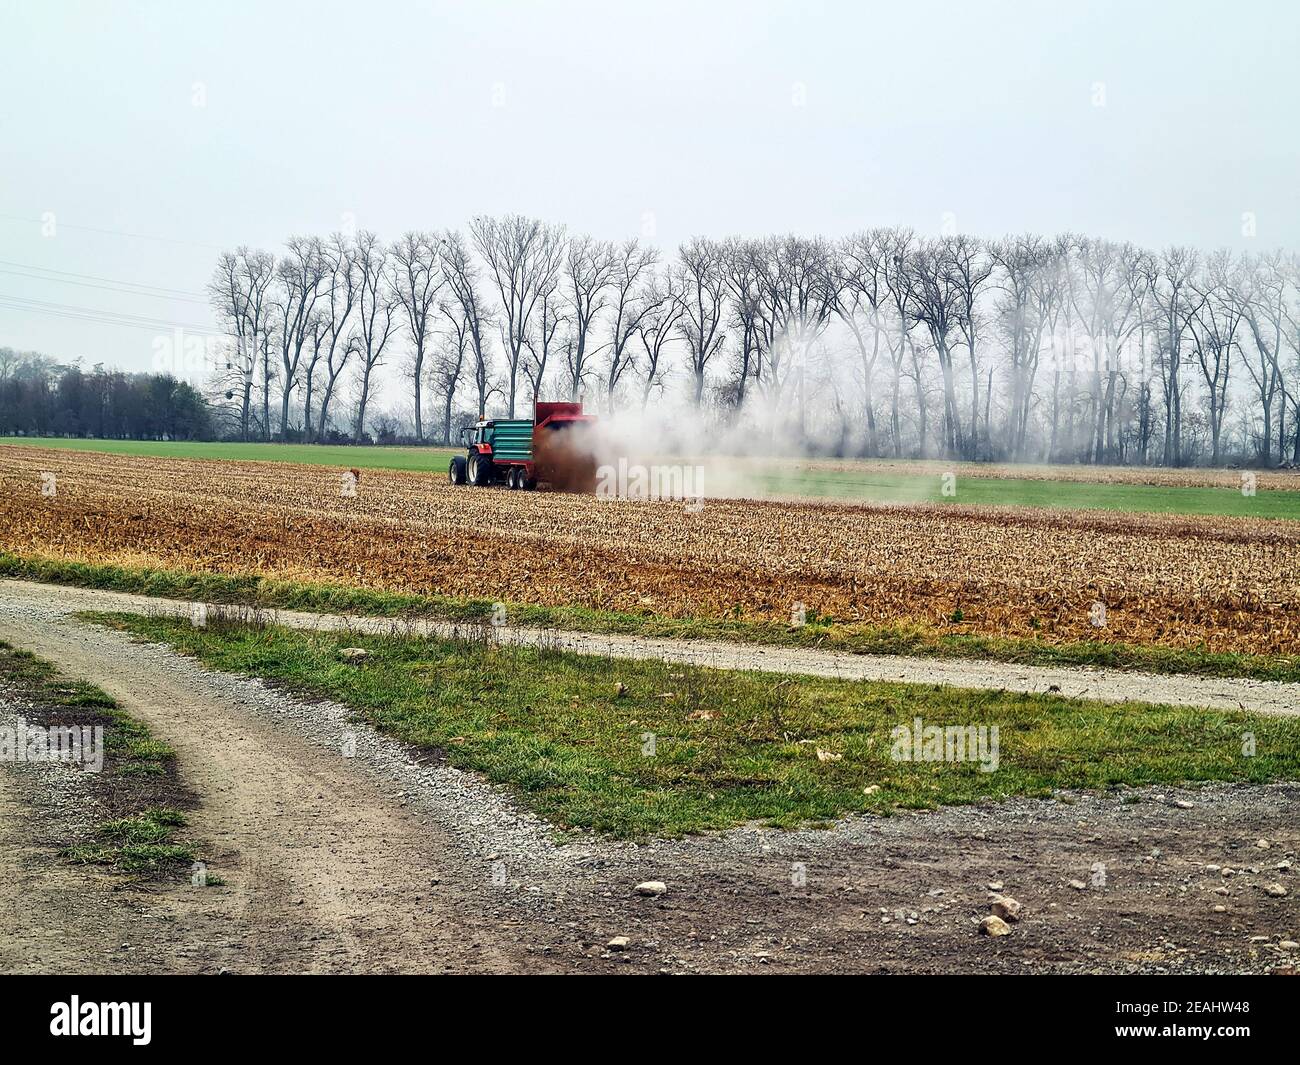 REISENBERG, ÖSTERREICH - 27. NOVEMBER 2019: Unidentifizierter Landwirt auf Traktor durch landwirtschaftliche Feldarbeit, Aufsprühen von Gülle auf einem Feld Stockfoto